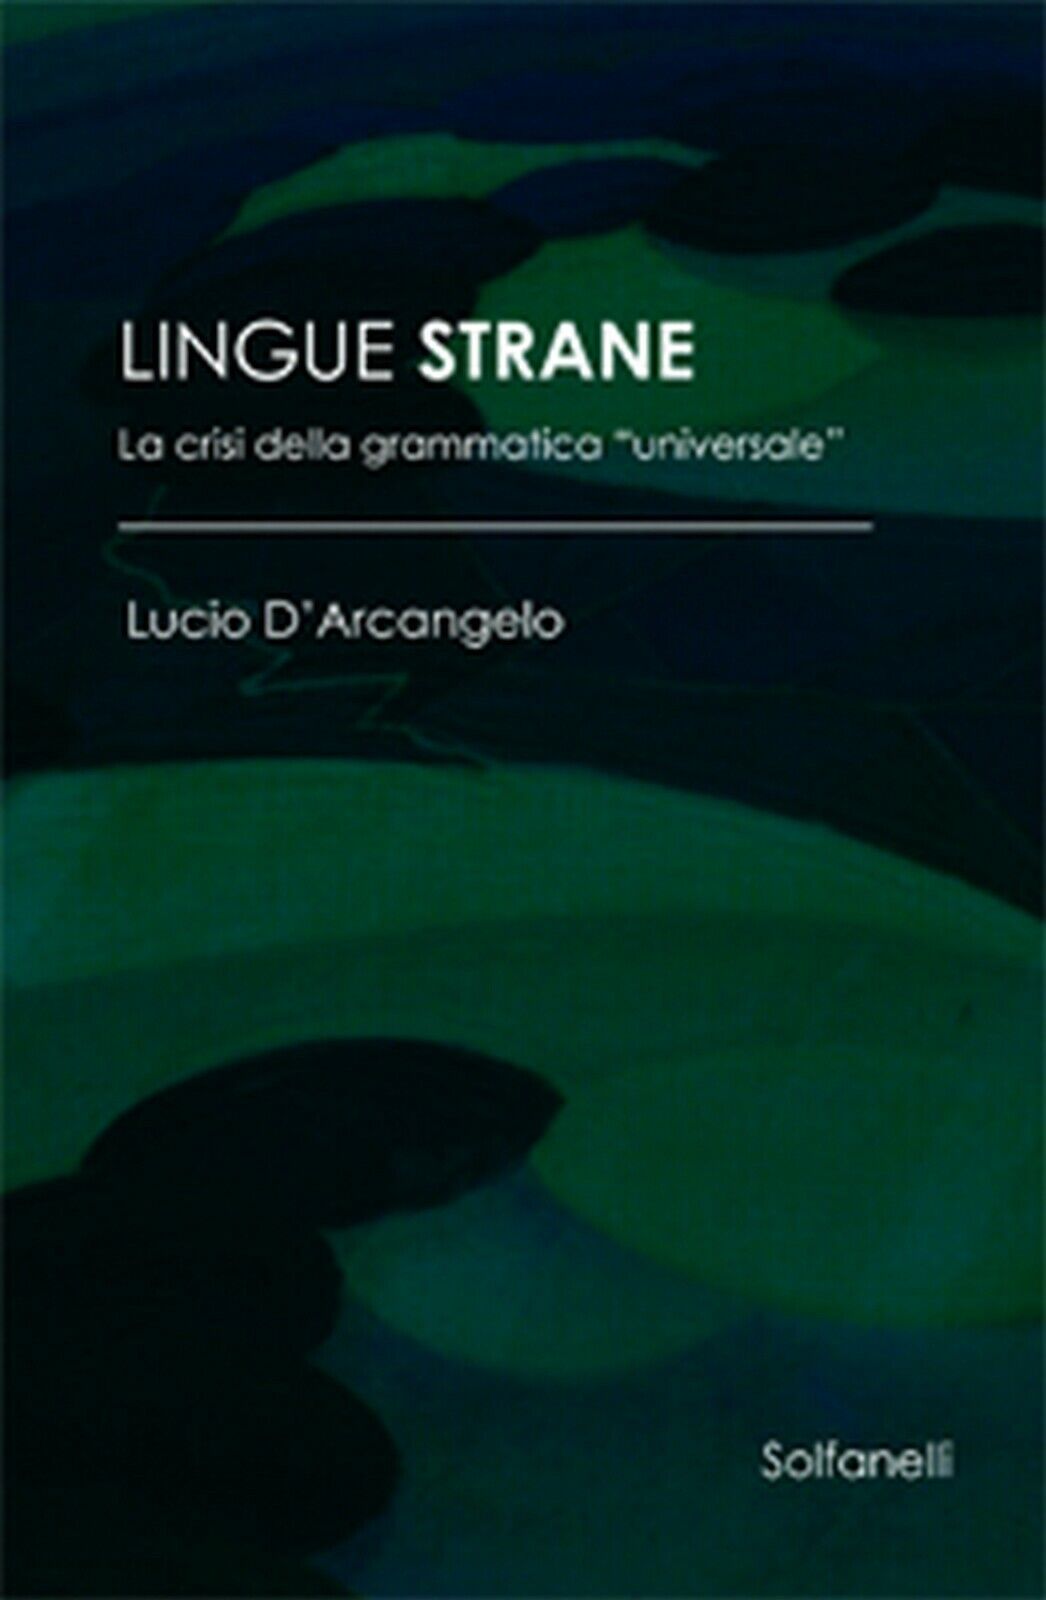 LINGUE STRANE La crisi della grammatica universale  di Lucio d'Arcangelo,  Solf.